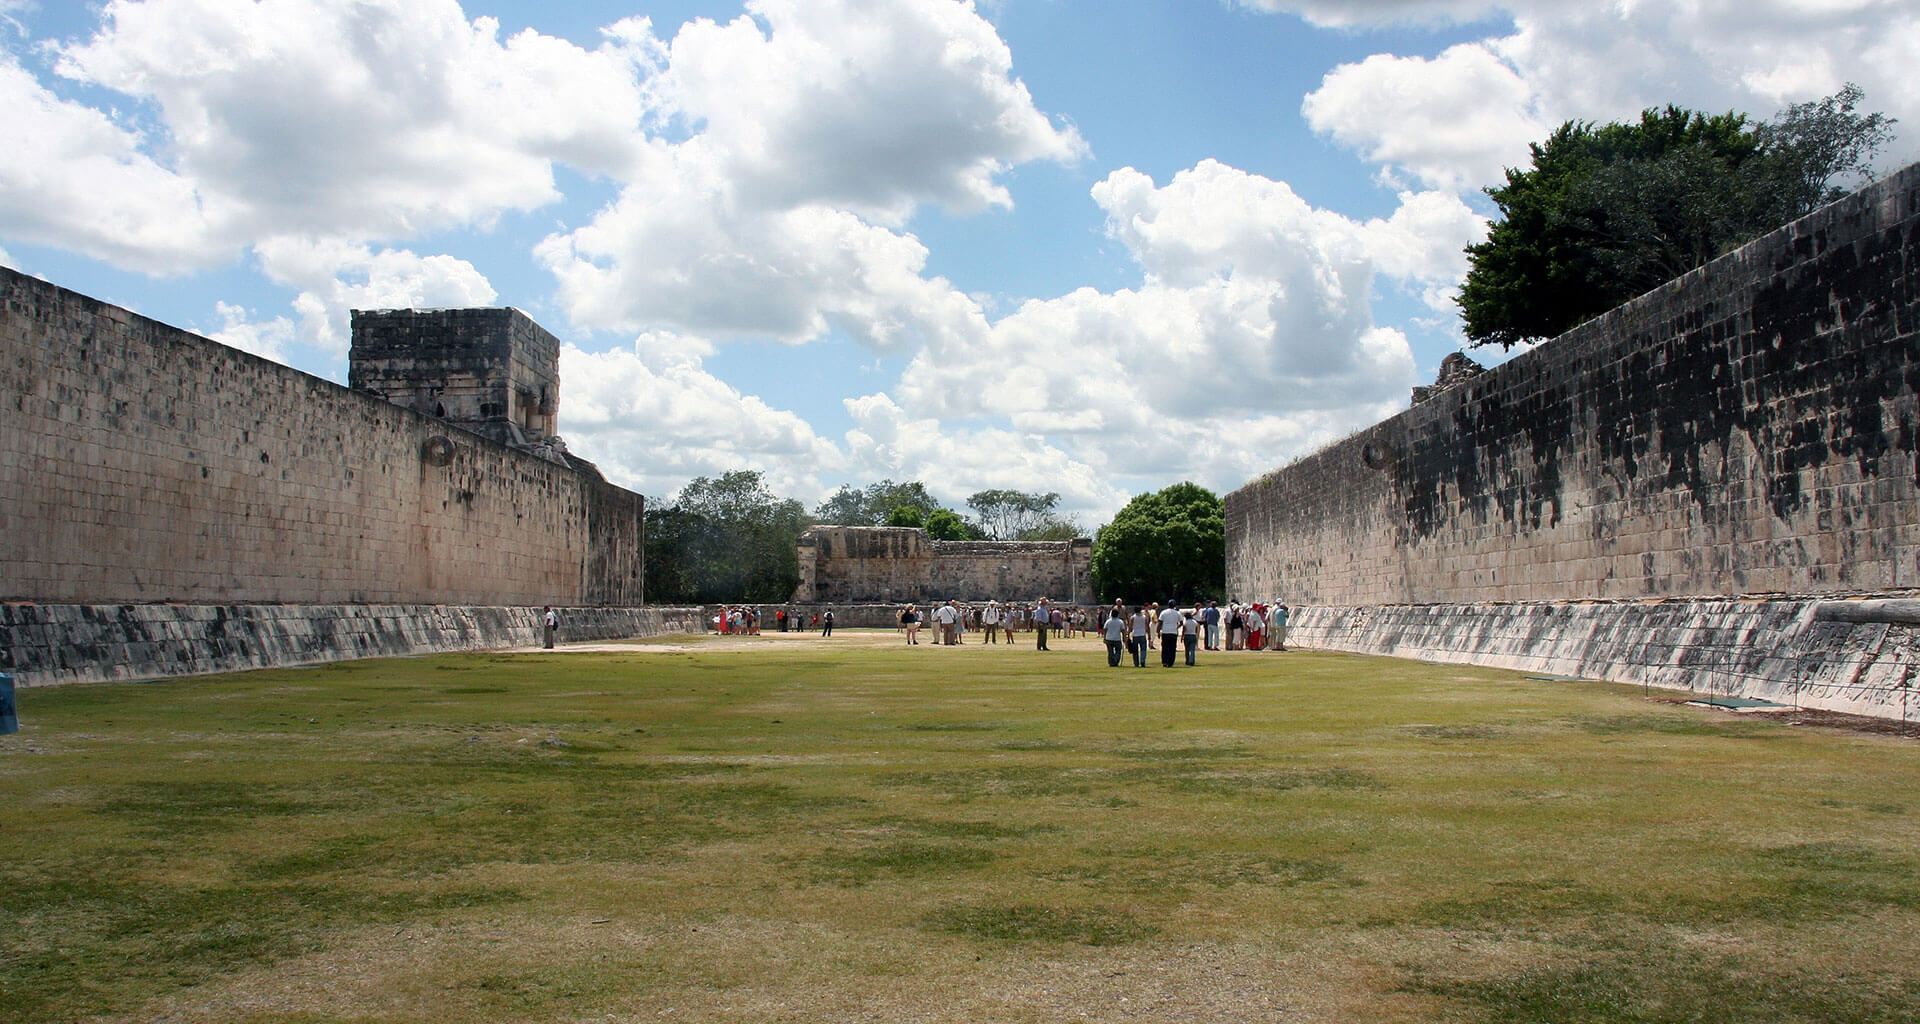 Os Jogos de Maya